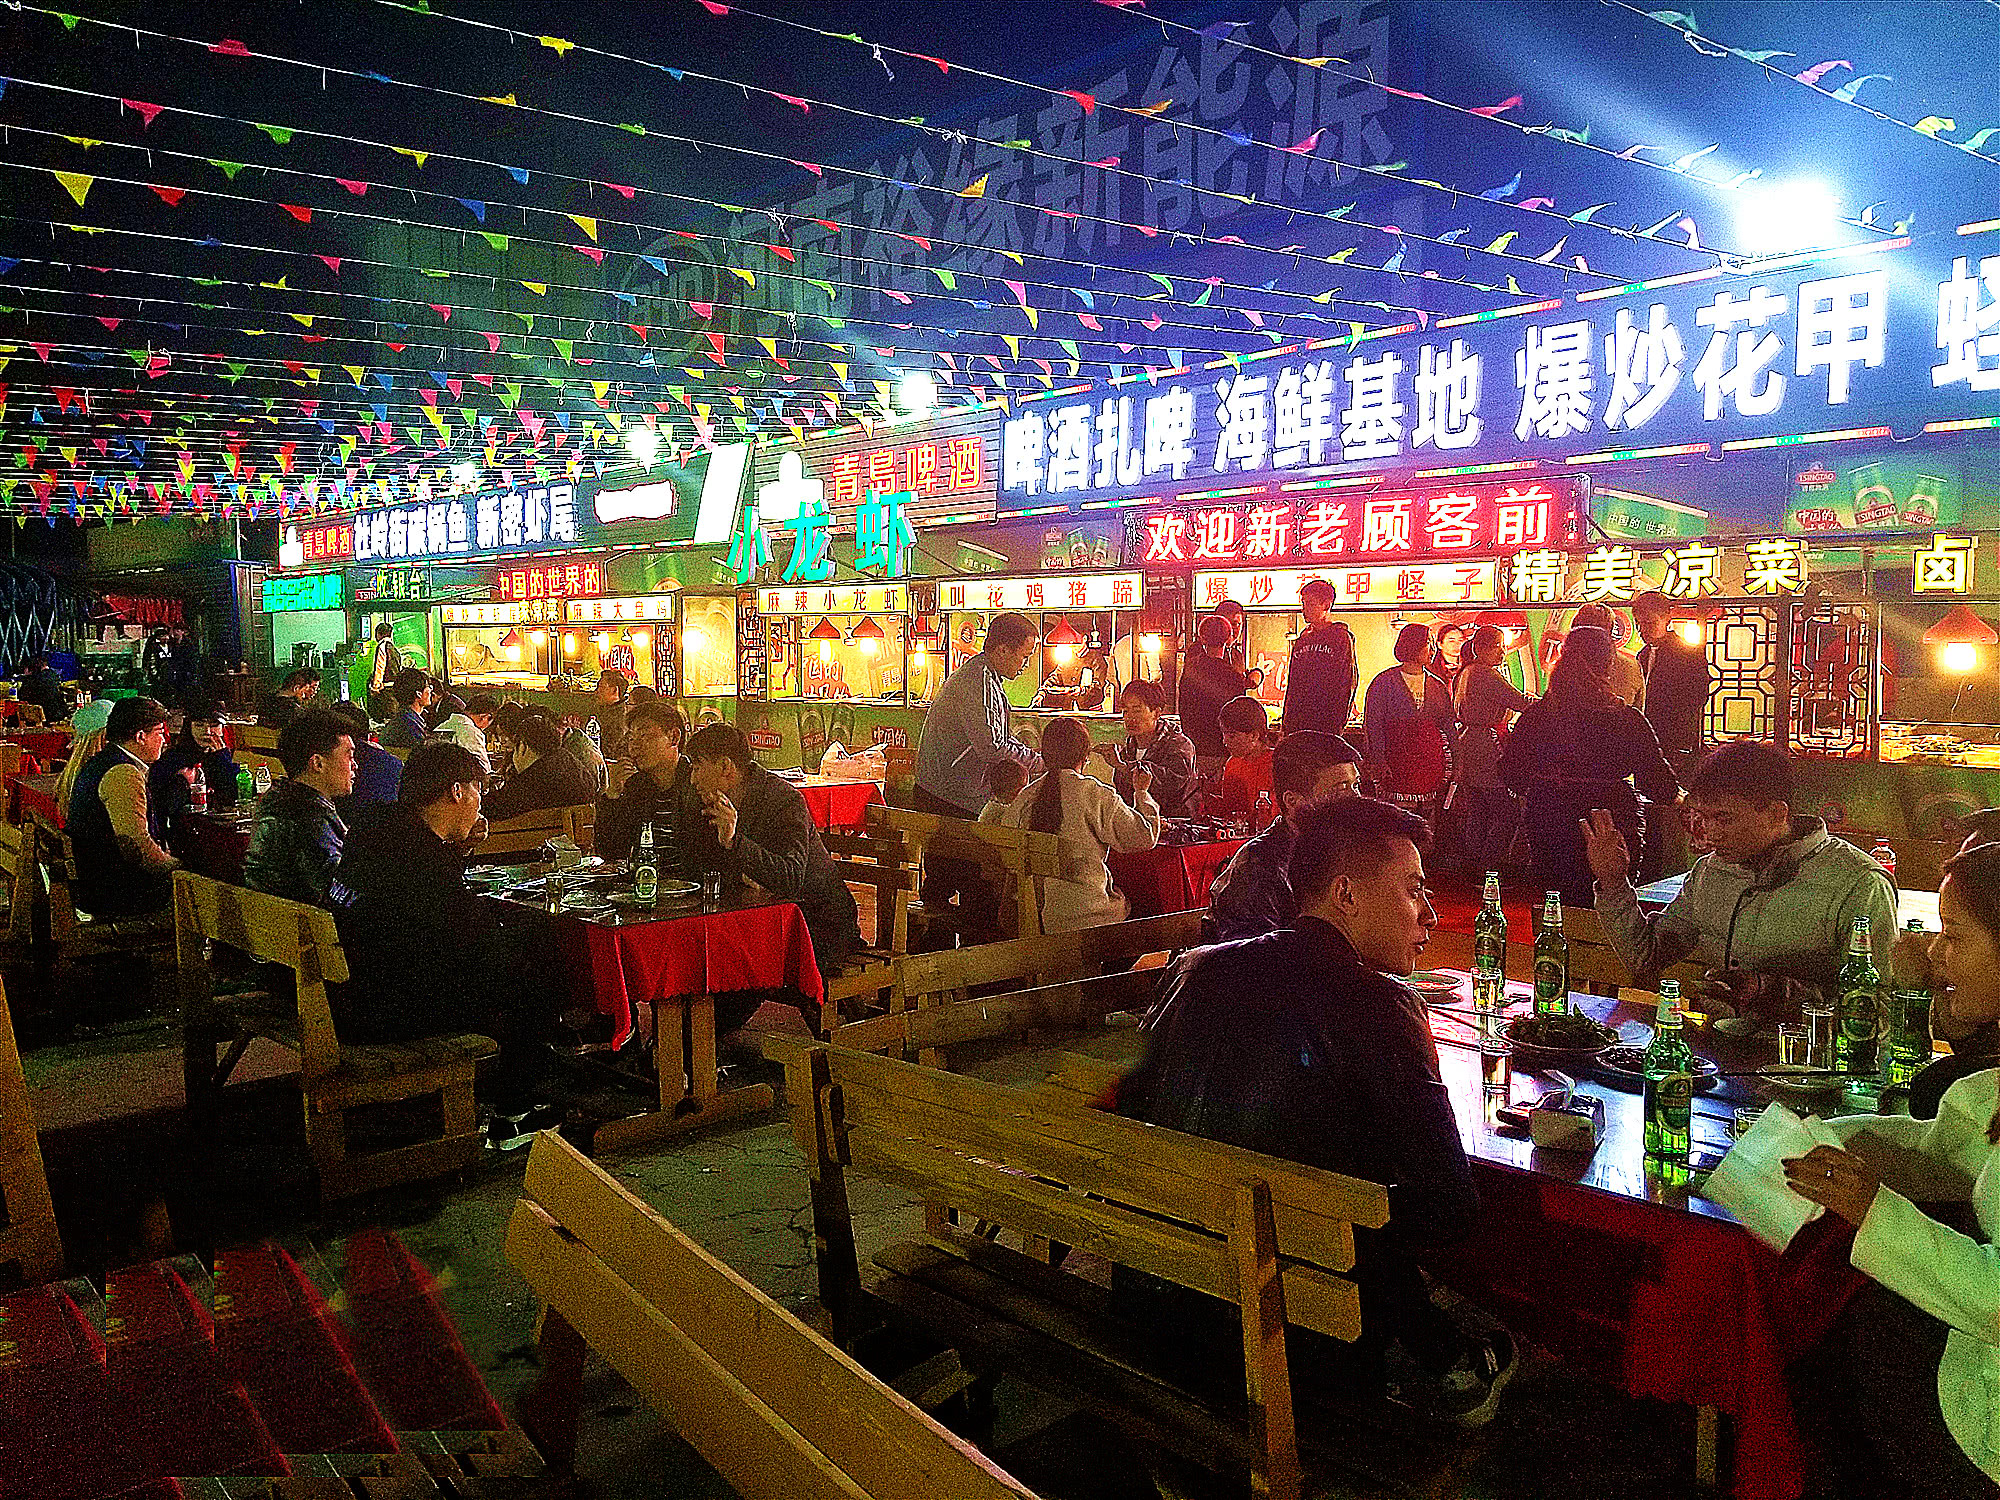 郑州北区热闹夜市之一鸿发美食城到处都是美食食客